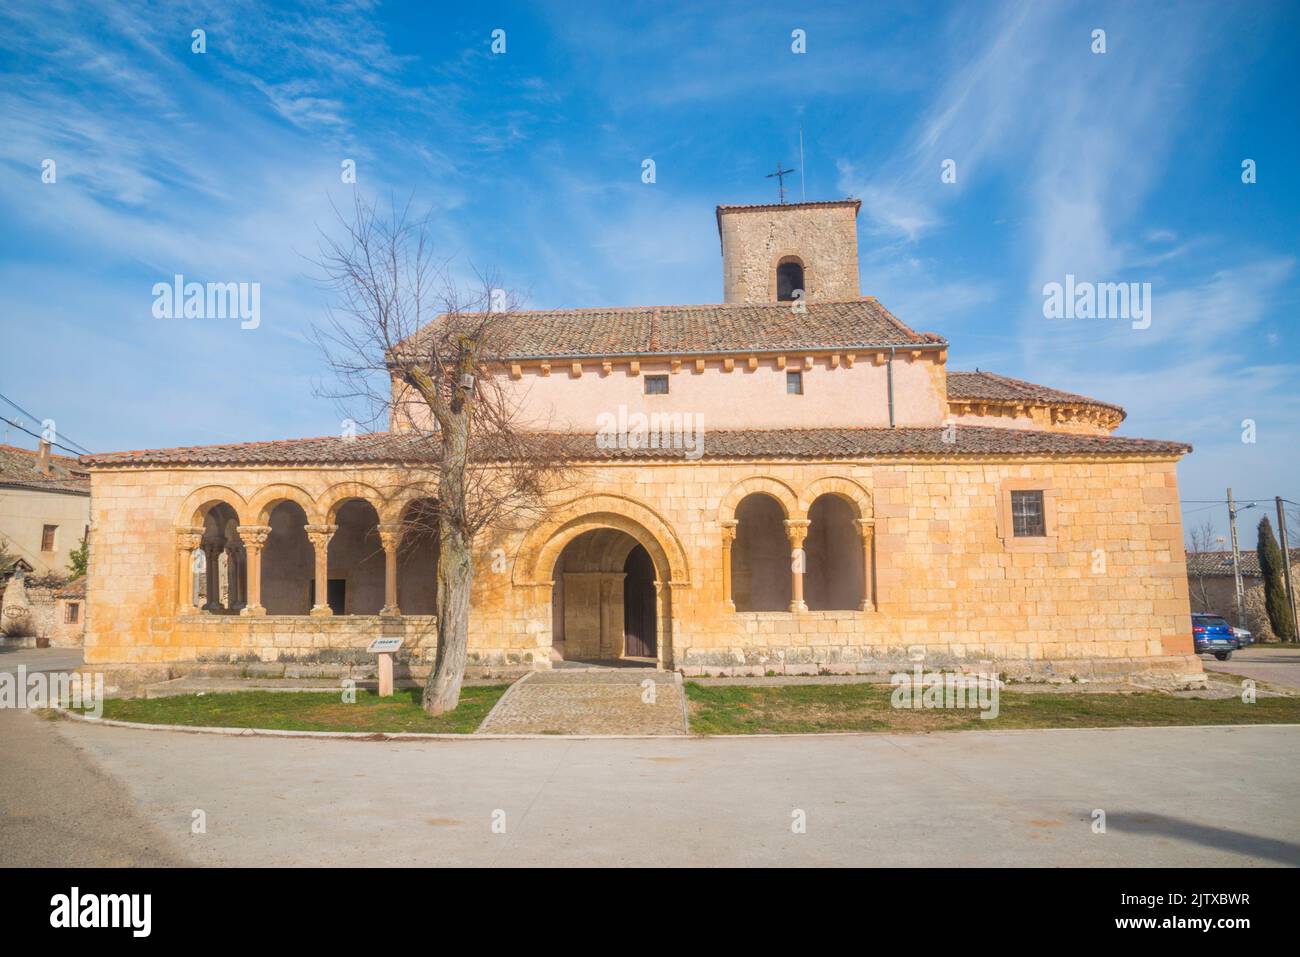 Facade of San Pedro Advincula church. Perorrubio, Segovia province, Castilla Leon, Spain. Stock Photo